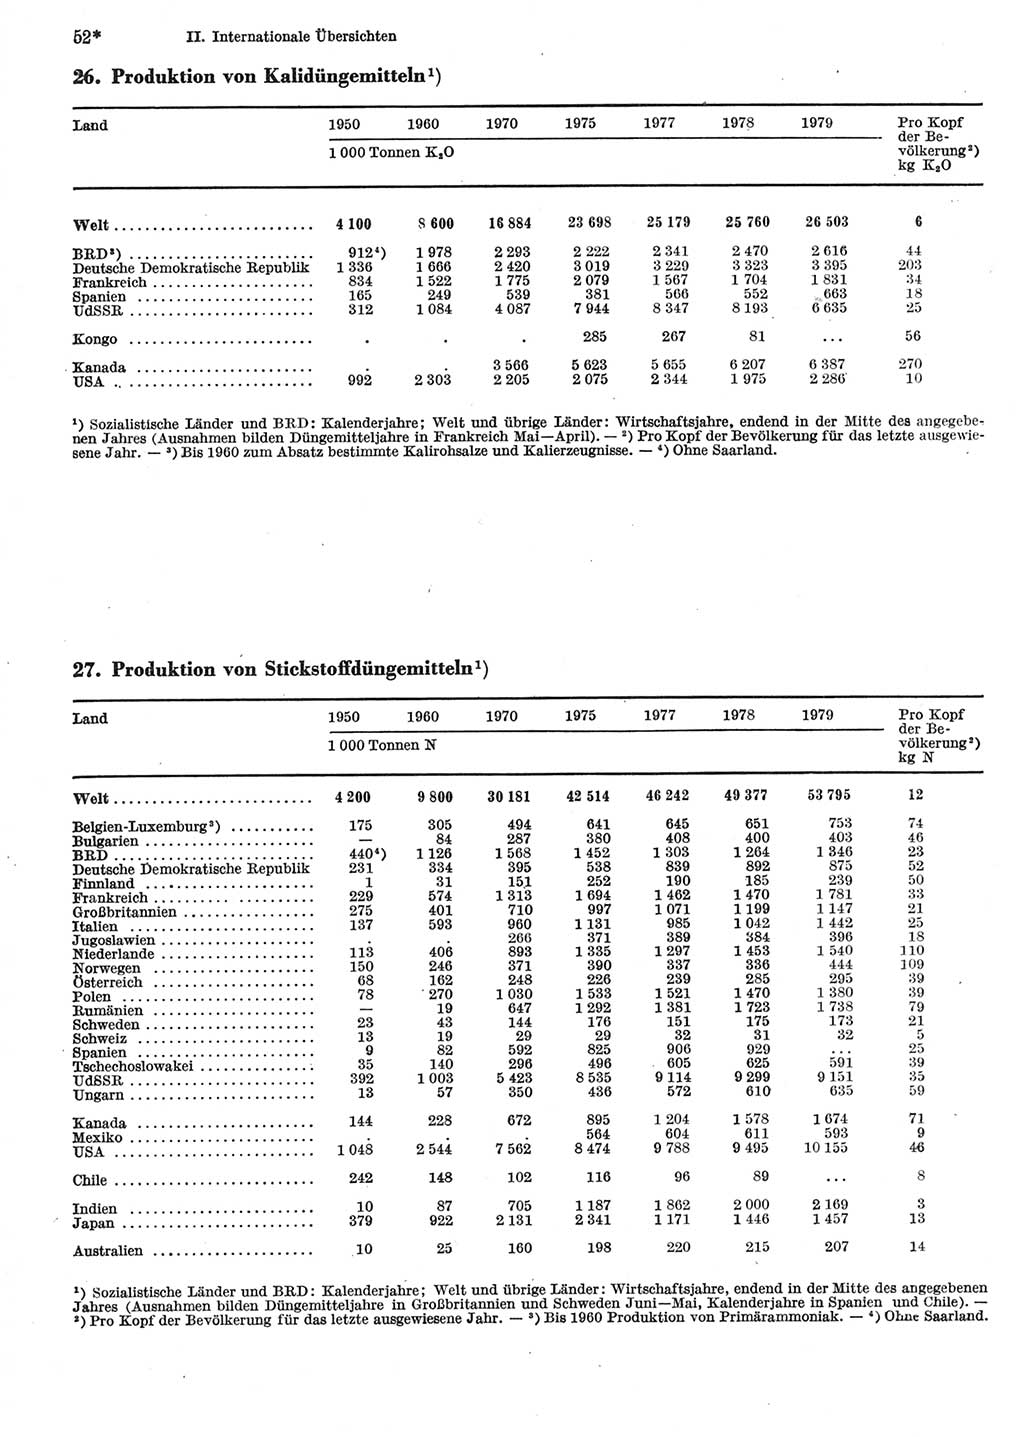 Statistisches Jahrbuch der Deutschen Demokratischen Republik (DDR) 1981, Seite 52 (Stat. Jb. DDR 1981, S. 52)